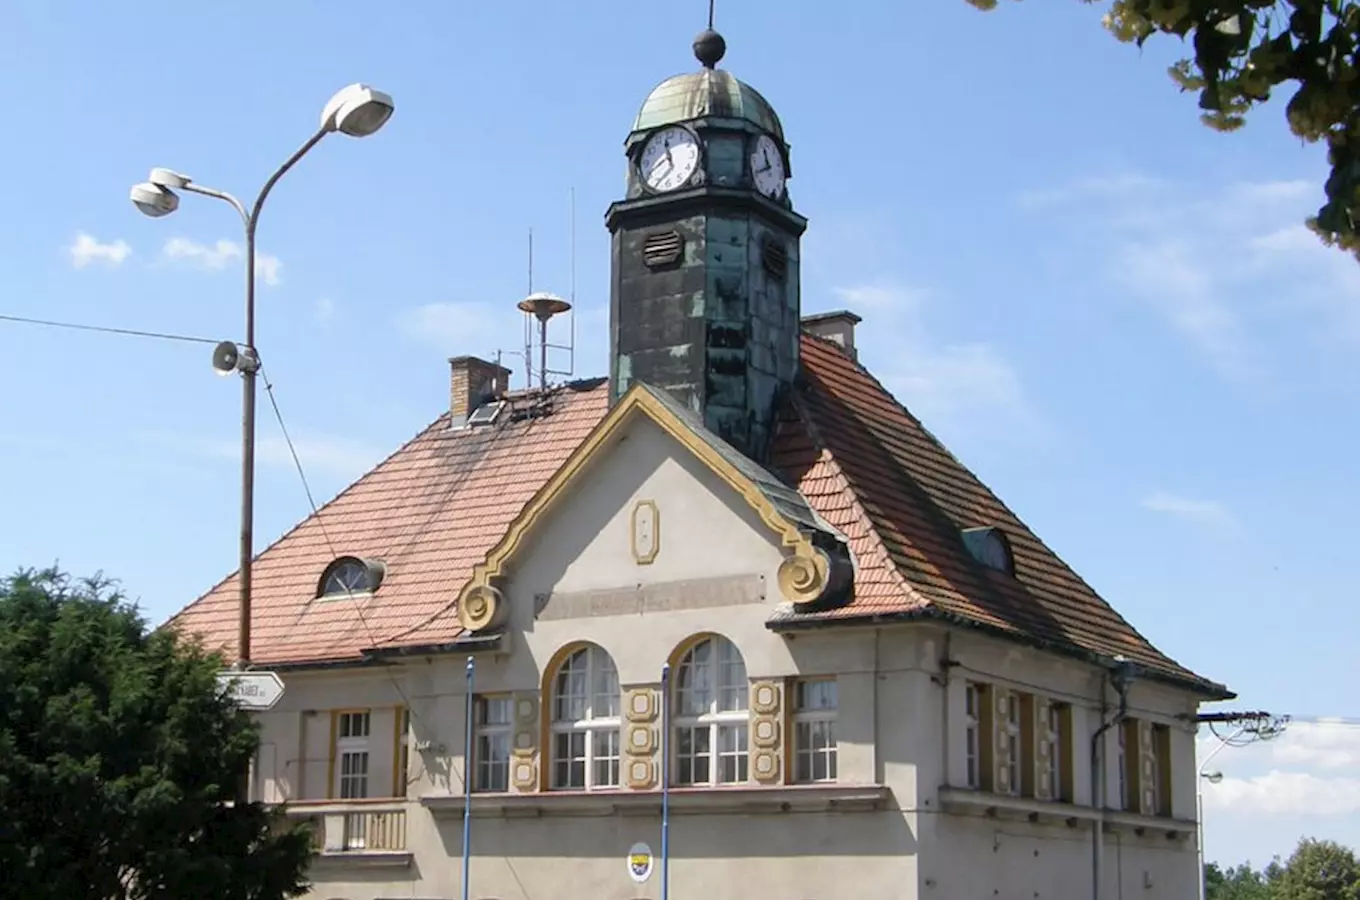 Radnice s hodinovou věží v Holýšově